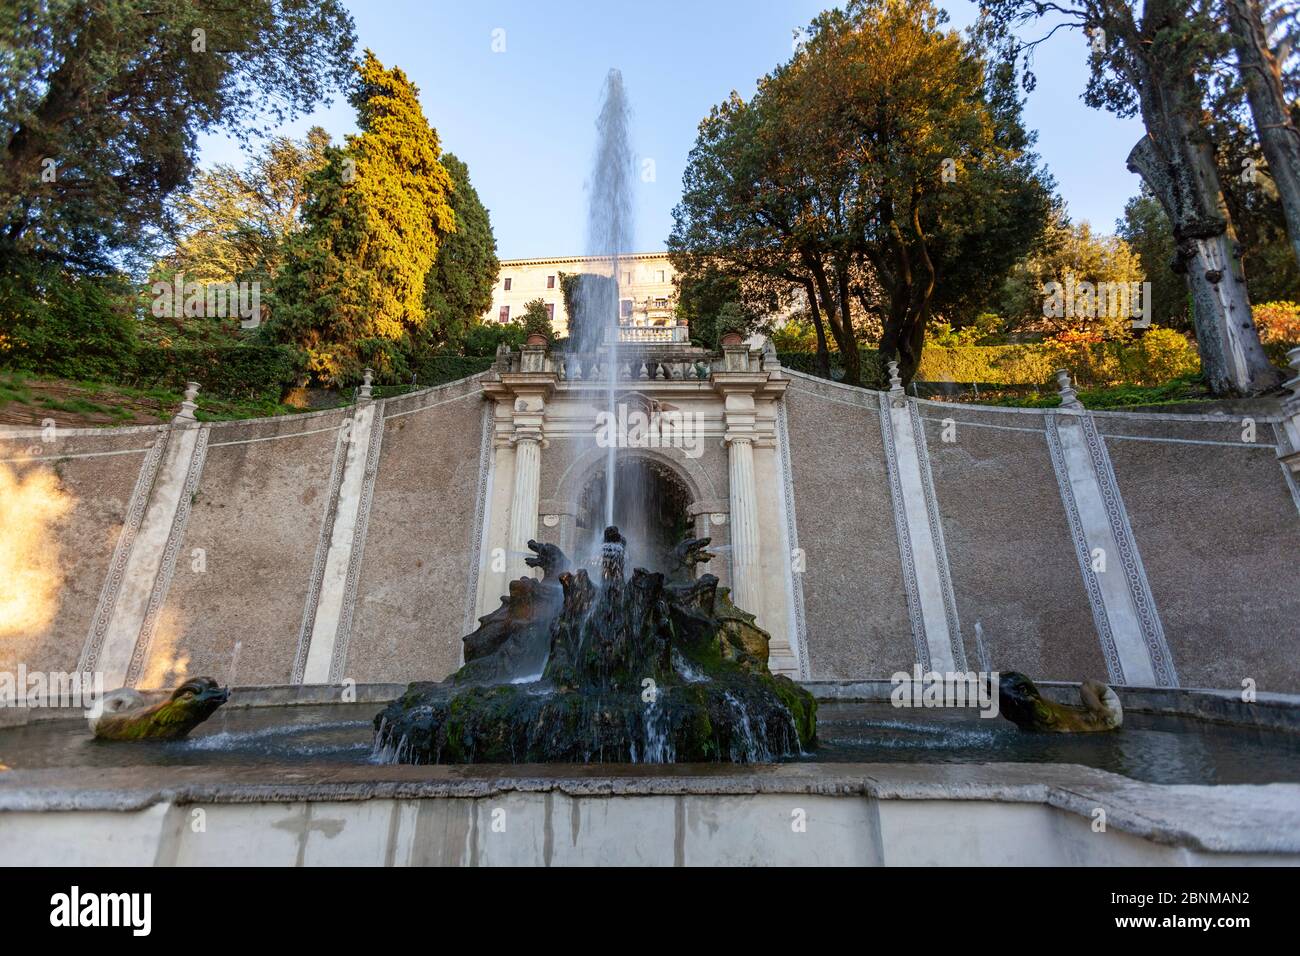 The fountain of the dragons, Villa d'Este,  Italian Renaissance garden, Tivoli, Italy Stock Photo